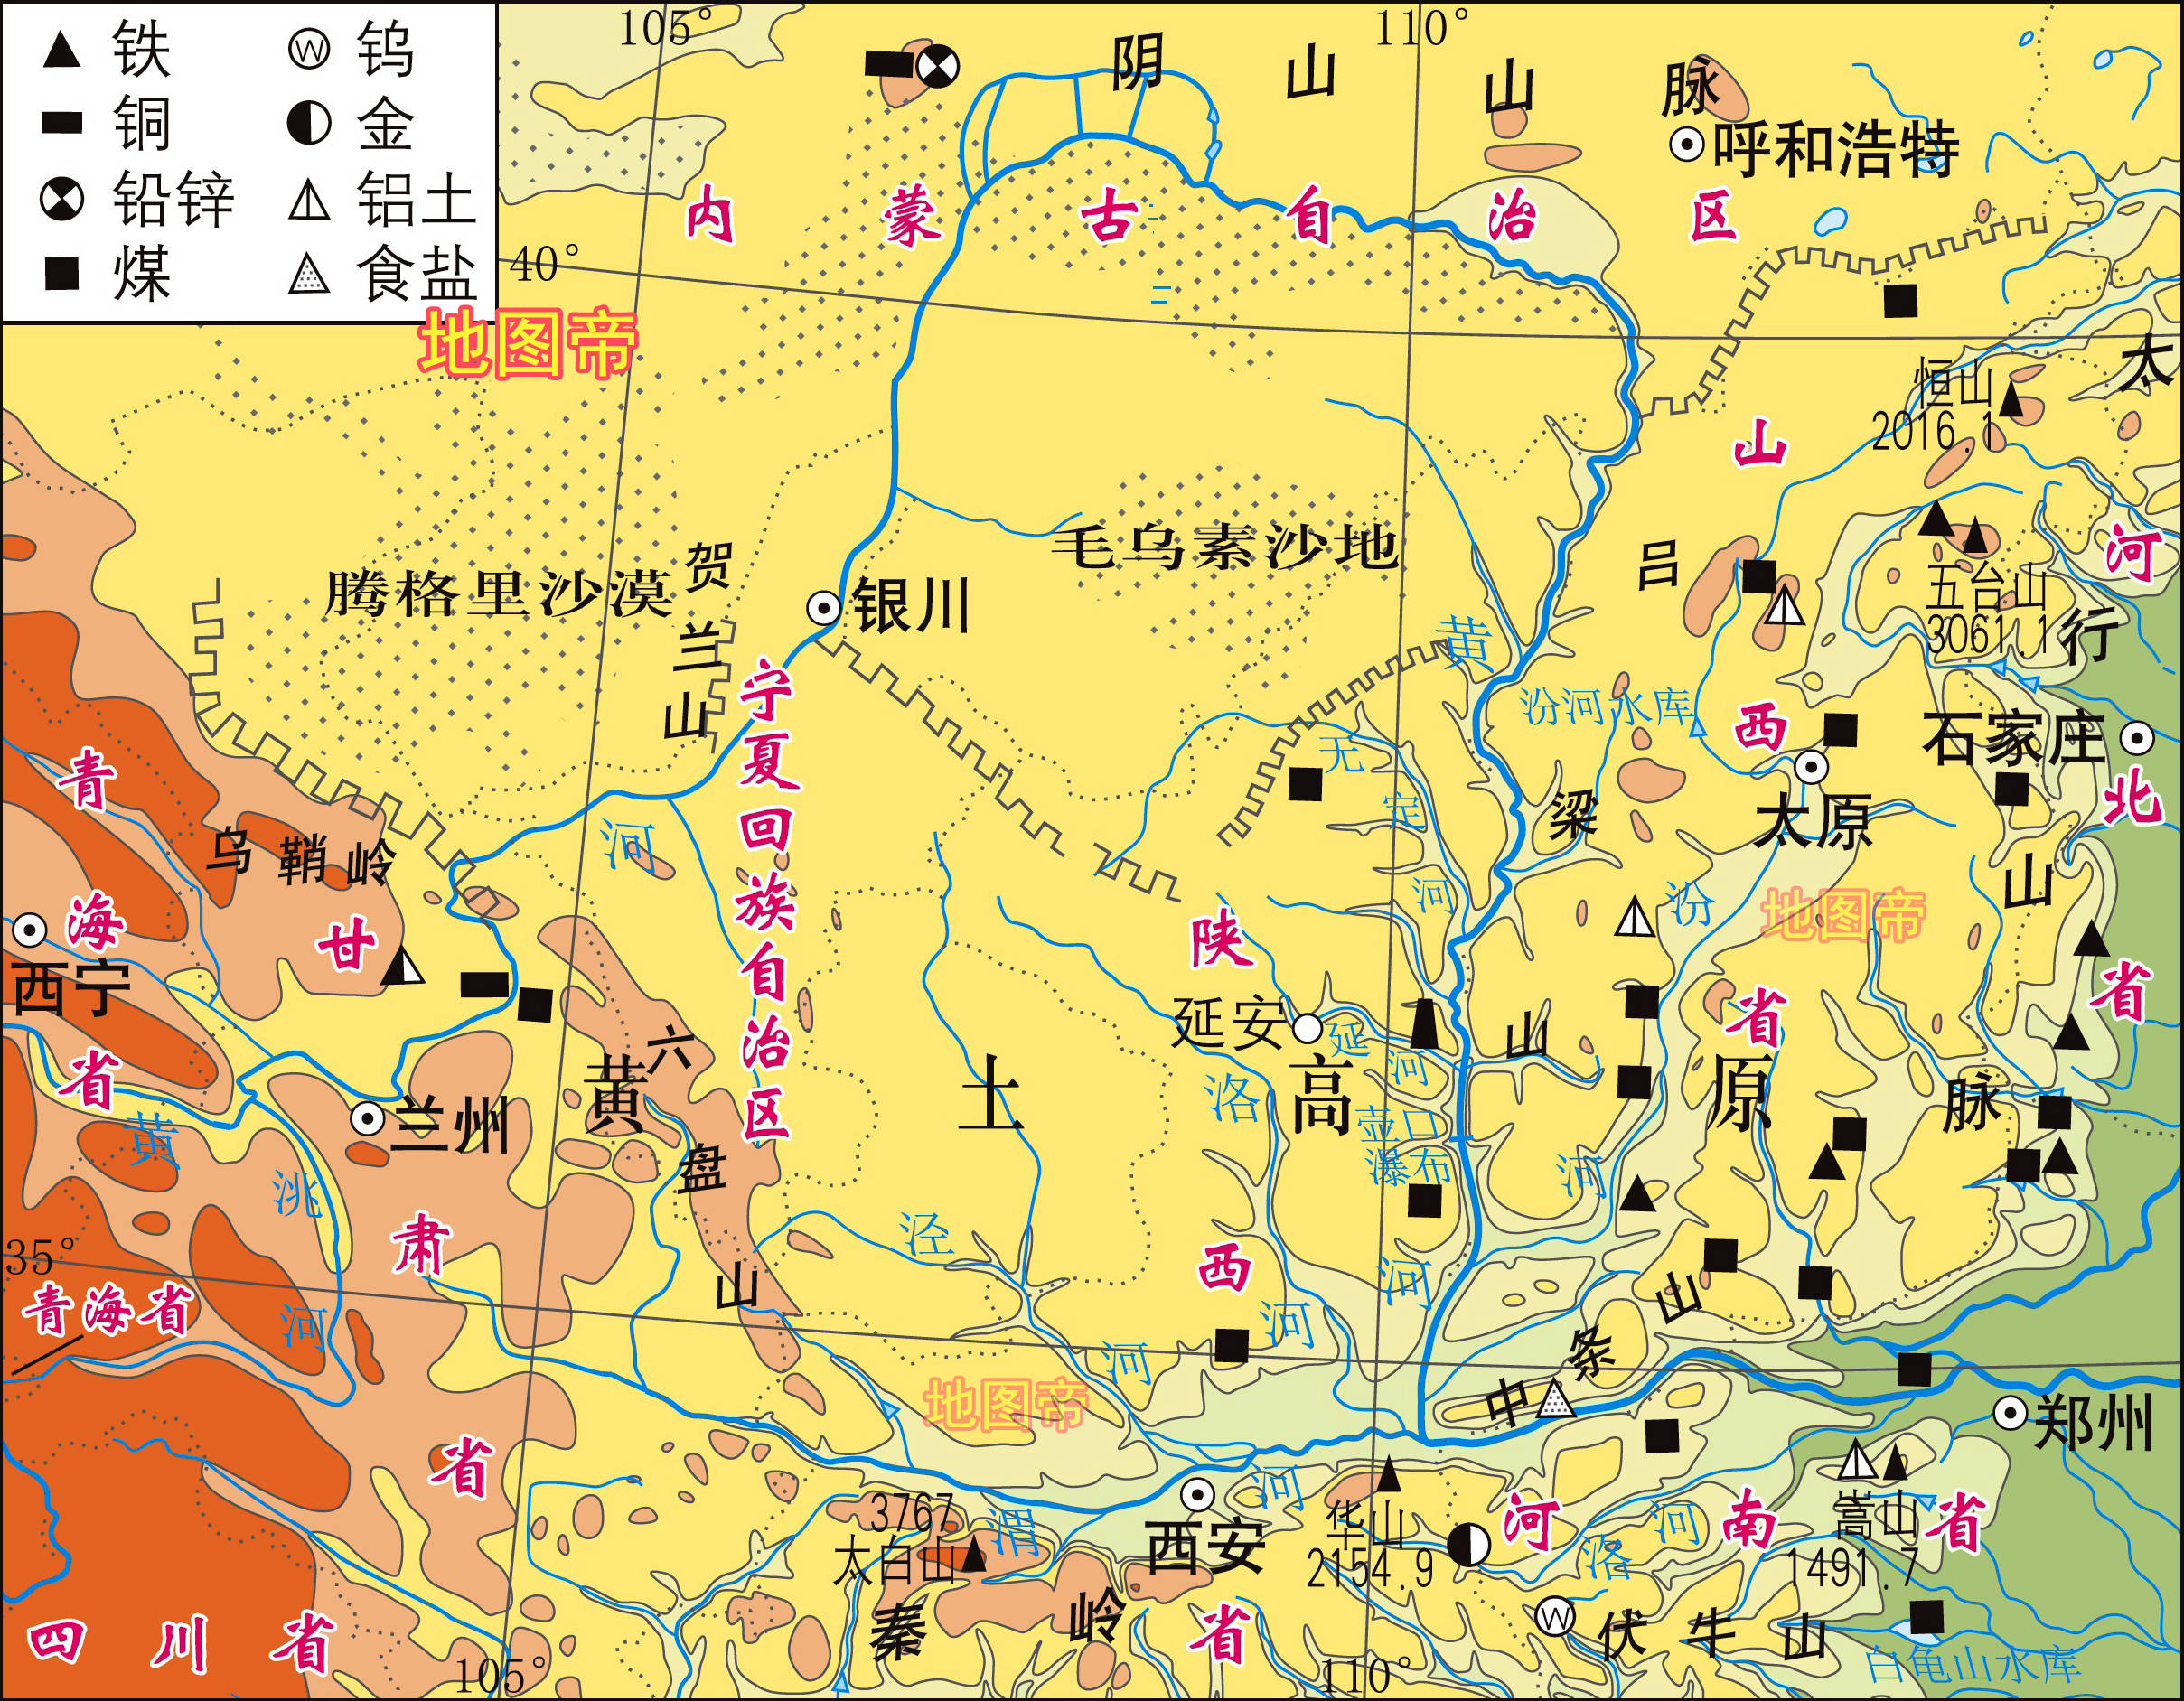 原创中国局部地形图7图